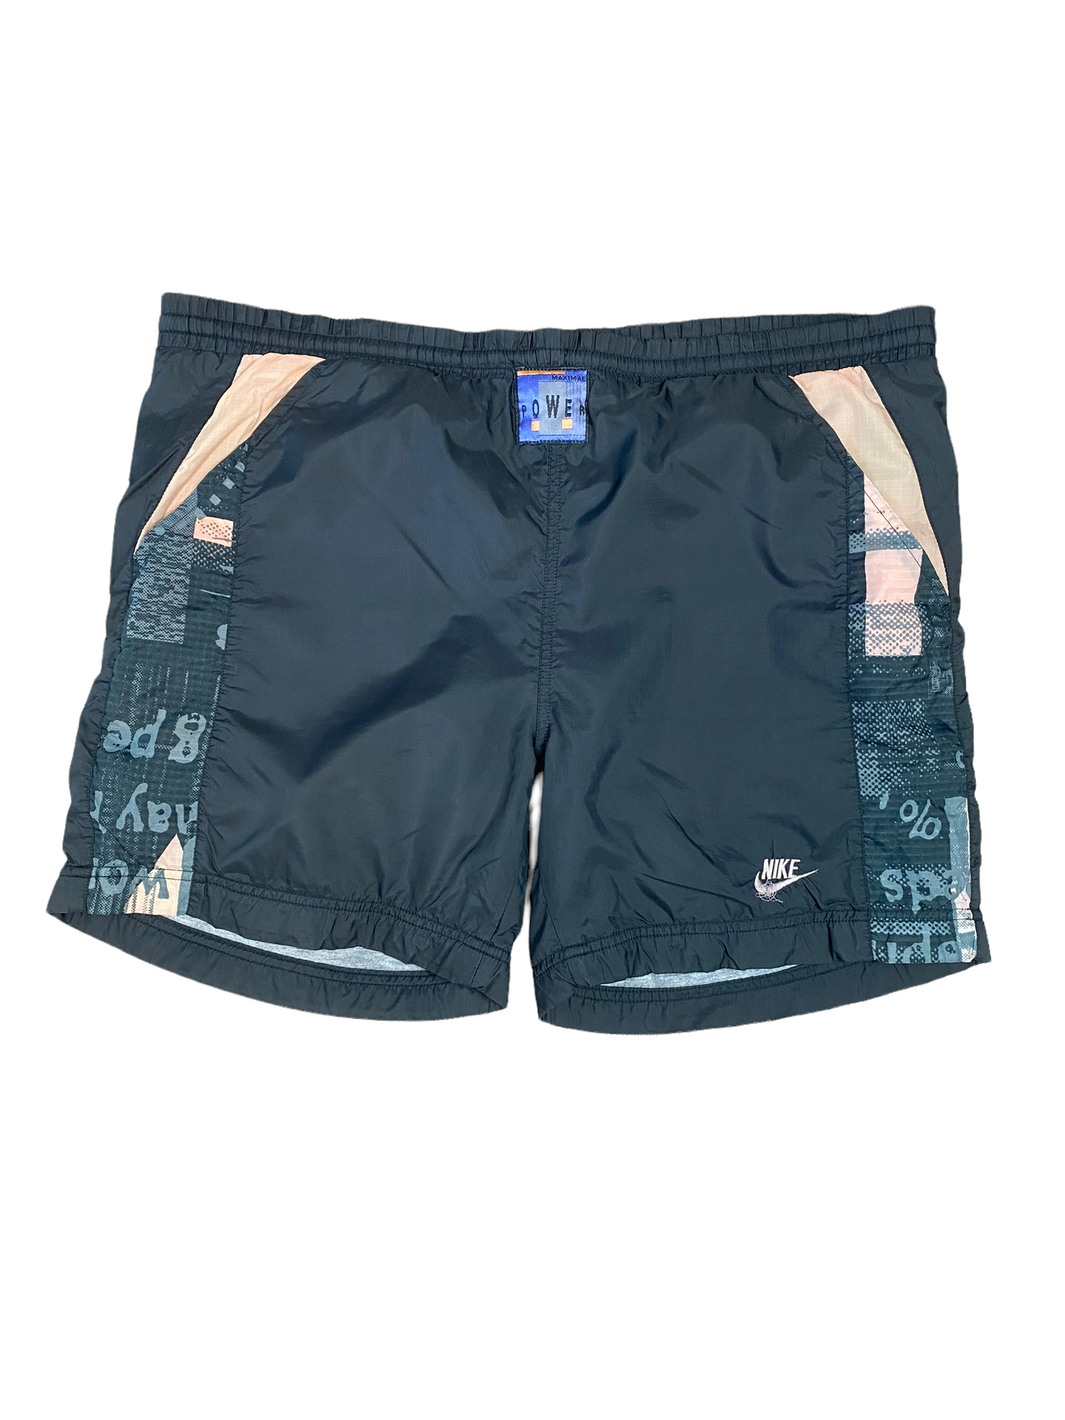 Nike Shorts 90s